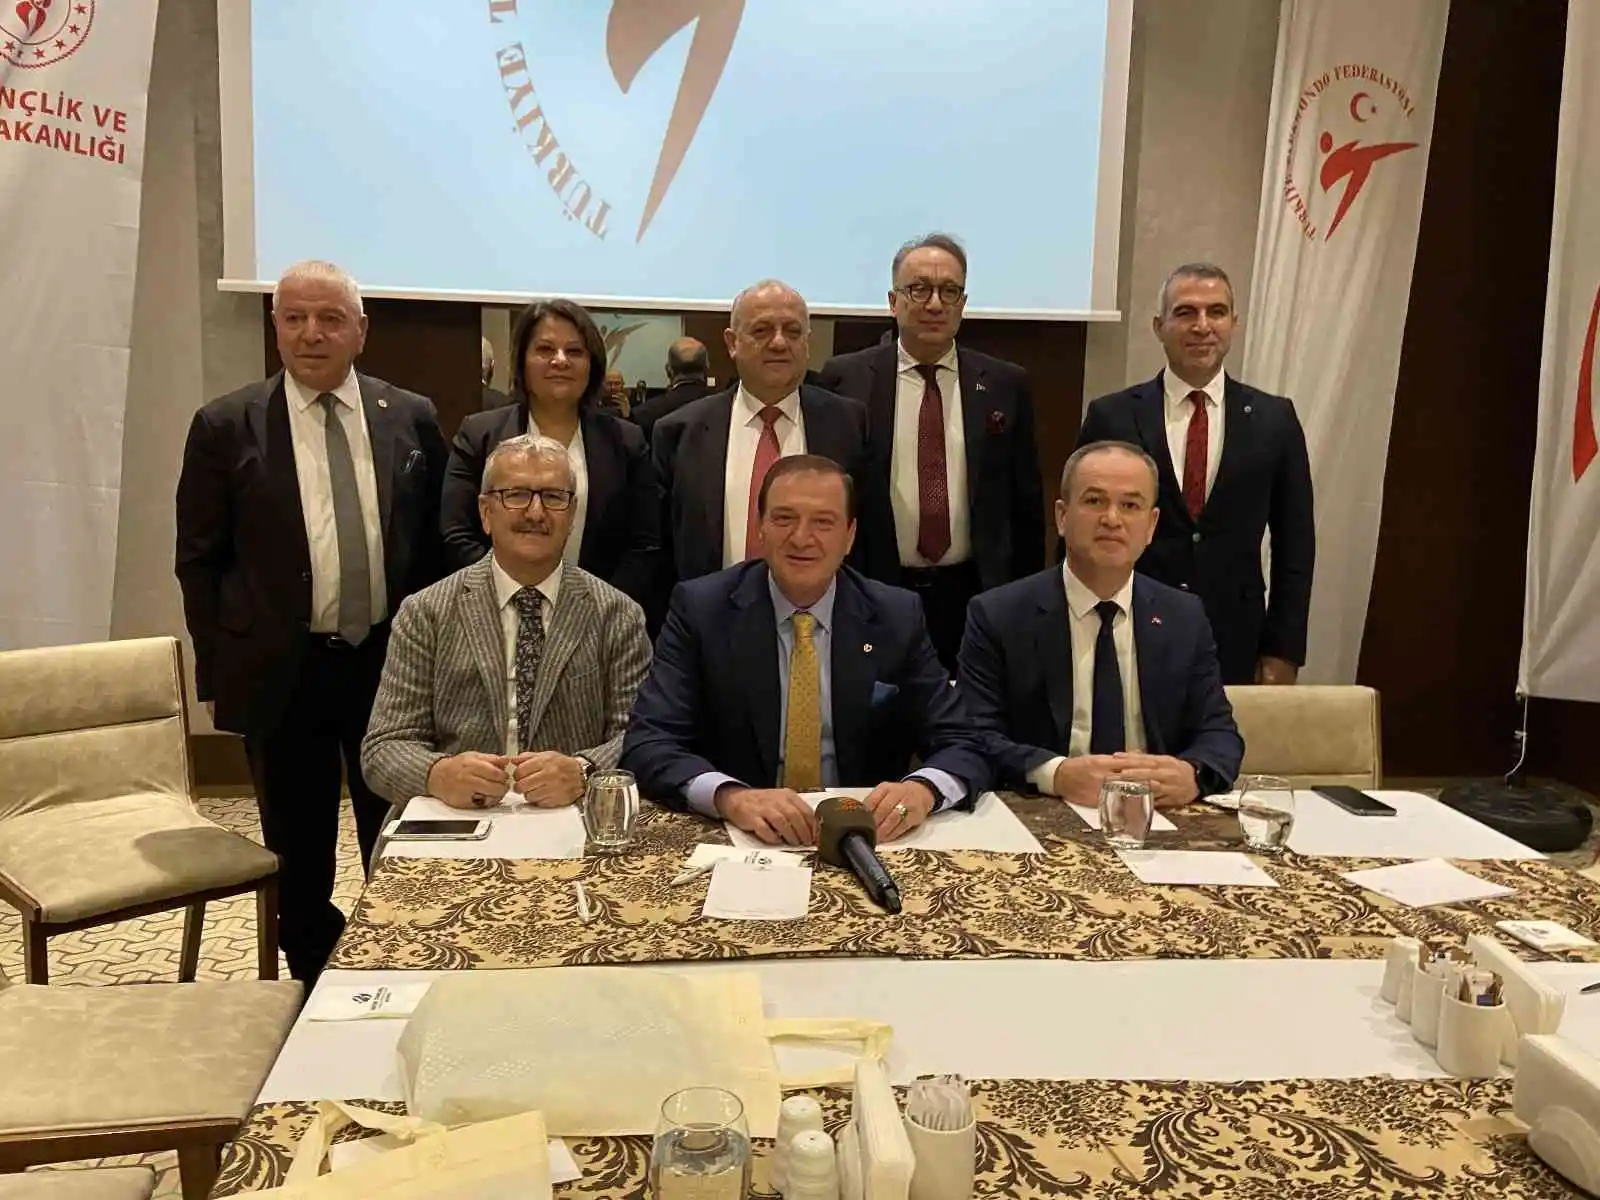 Büyükler Türkiye Tekvando Şampiyonası Konya’da başladı
